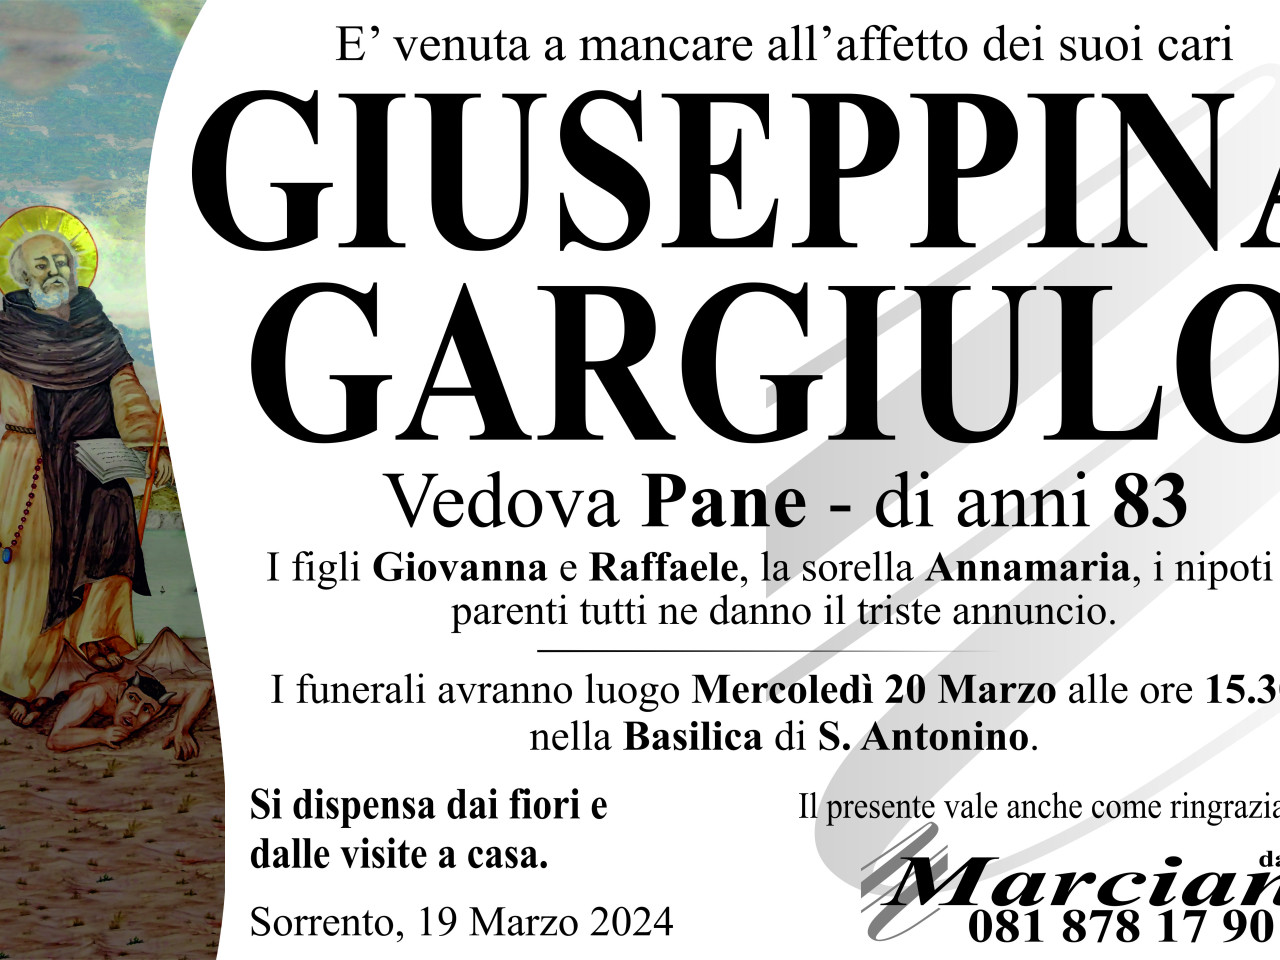 Giuseppina Gargiulo